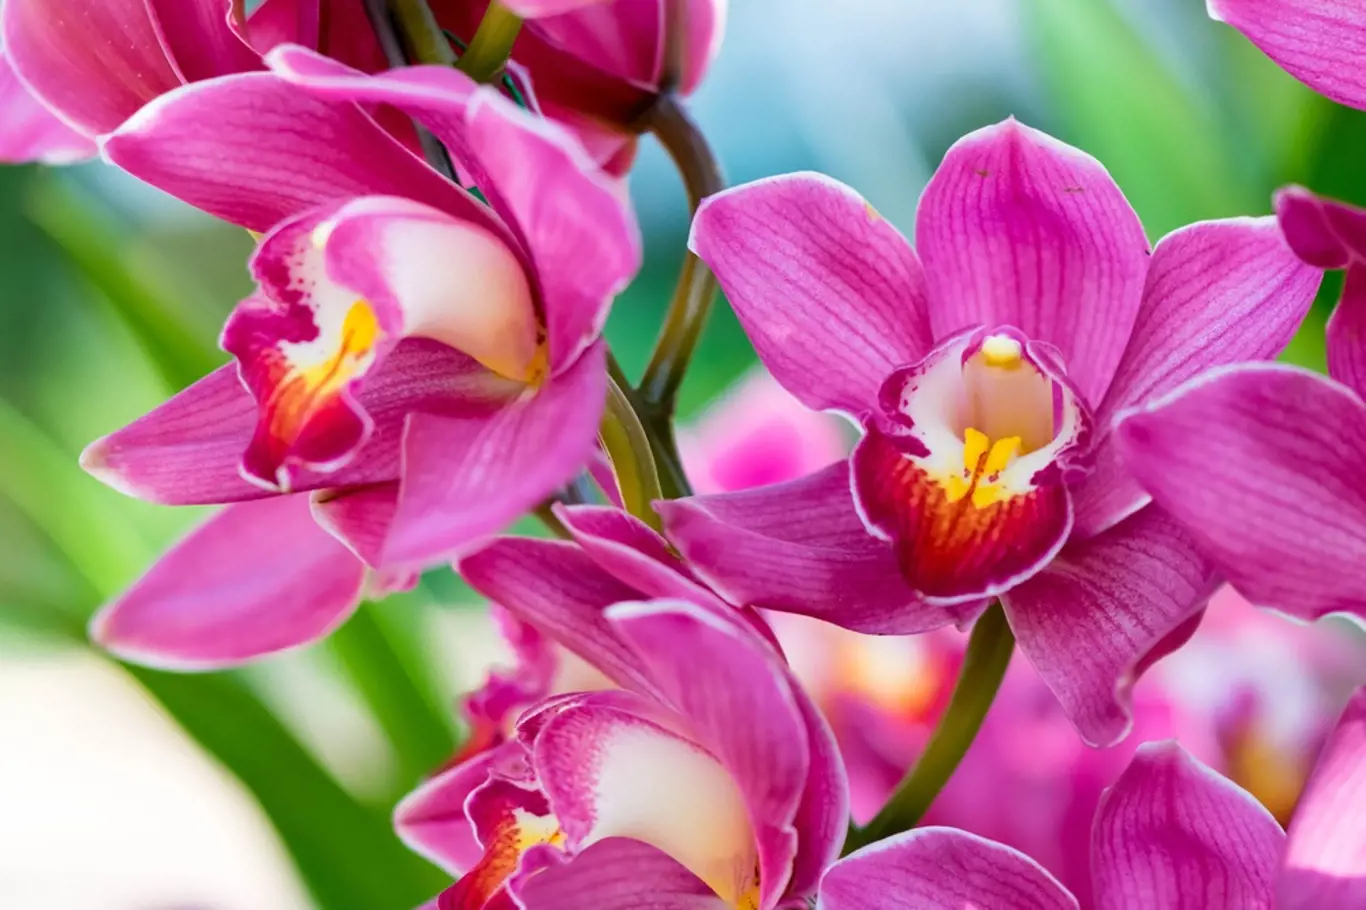 Raci vždy odejdou z květinářství s orchidejí